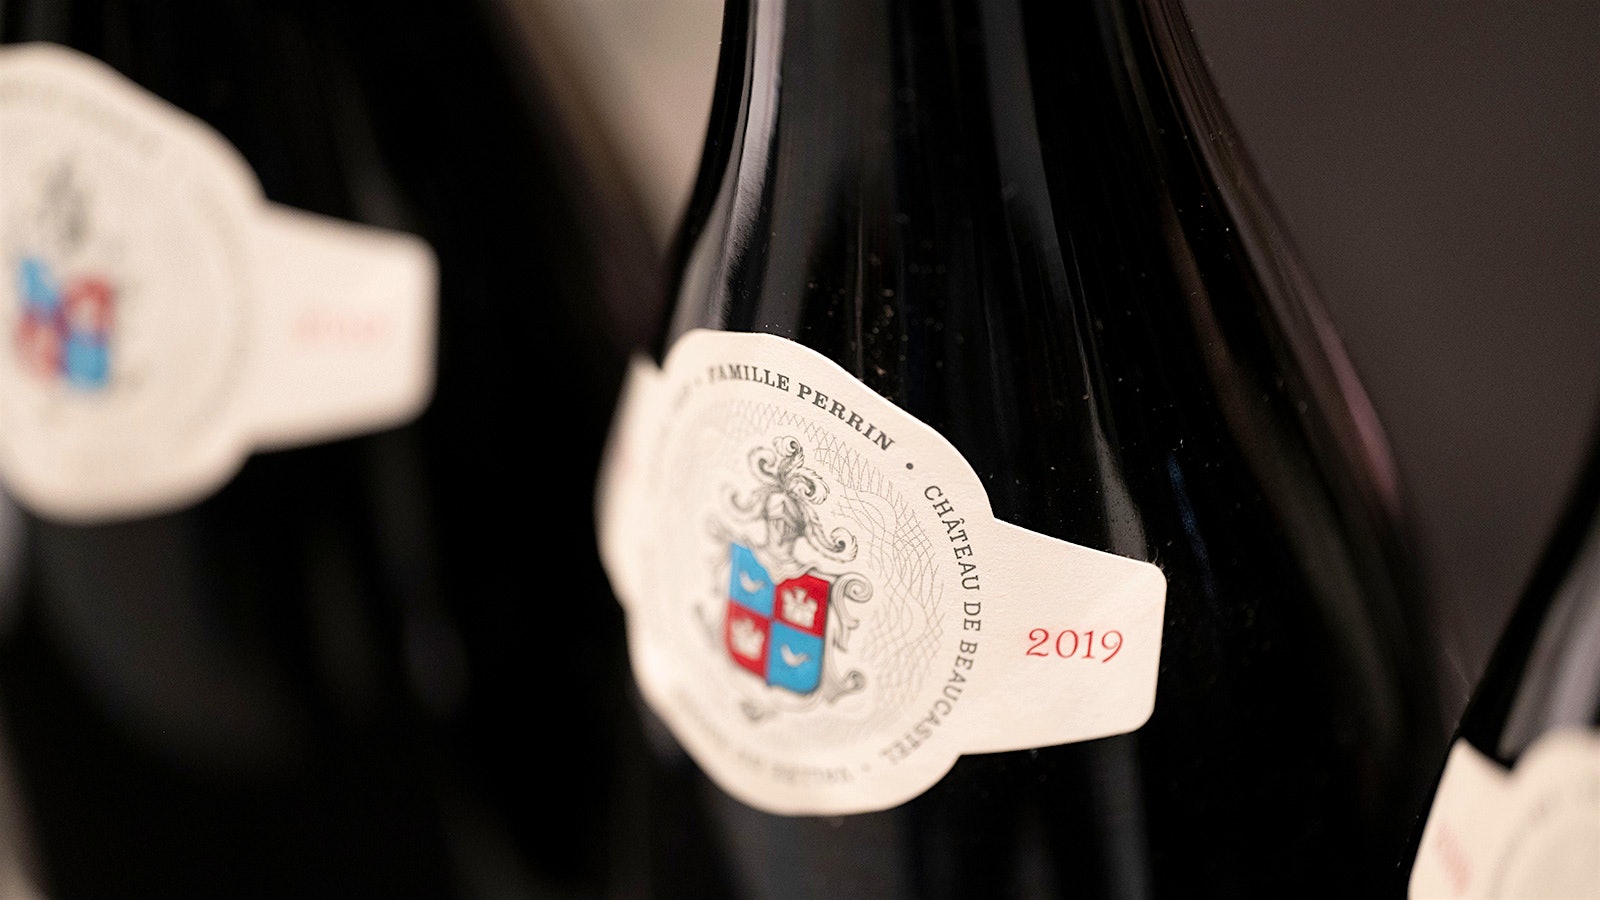  Neck label on bottles of 2019 Beaucastel from Famille Perrin